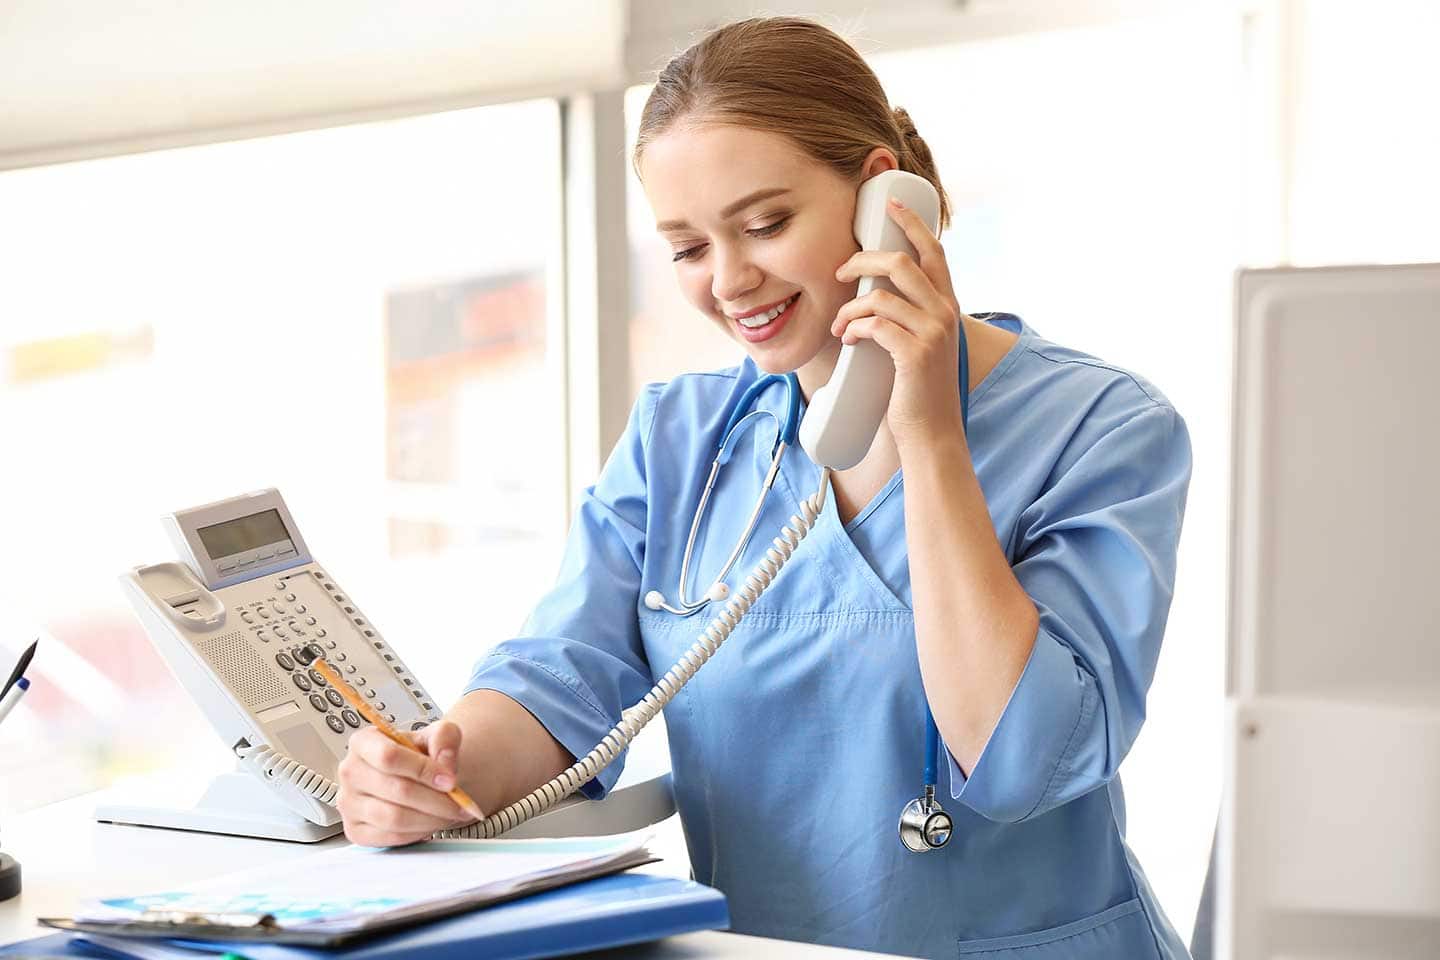 Medizinische Fachangestellte in einer Arztpraxis, die telefoniert und sich Notizen macht.